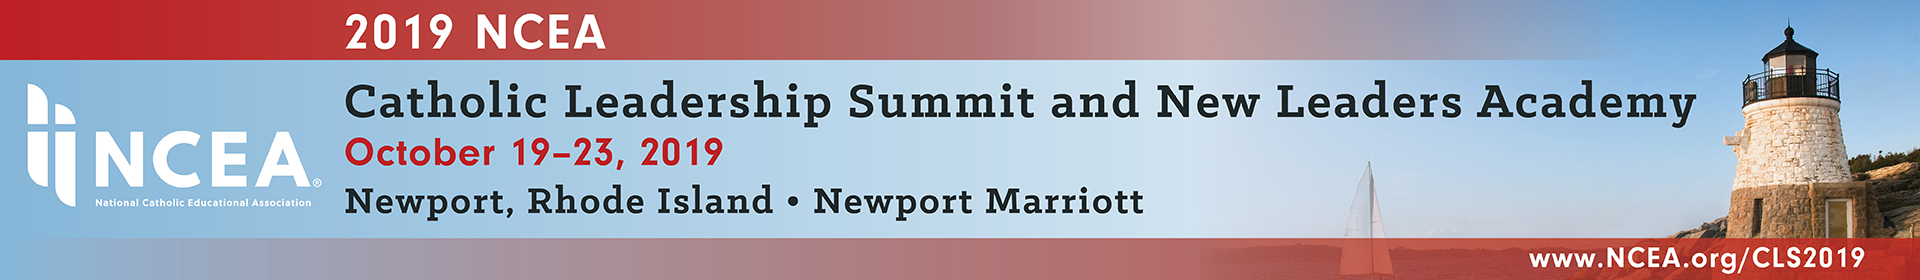 2019 NCEA Catholic Leadership Summit Event Banner